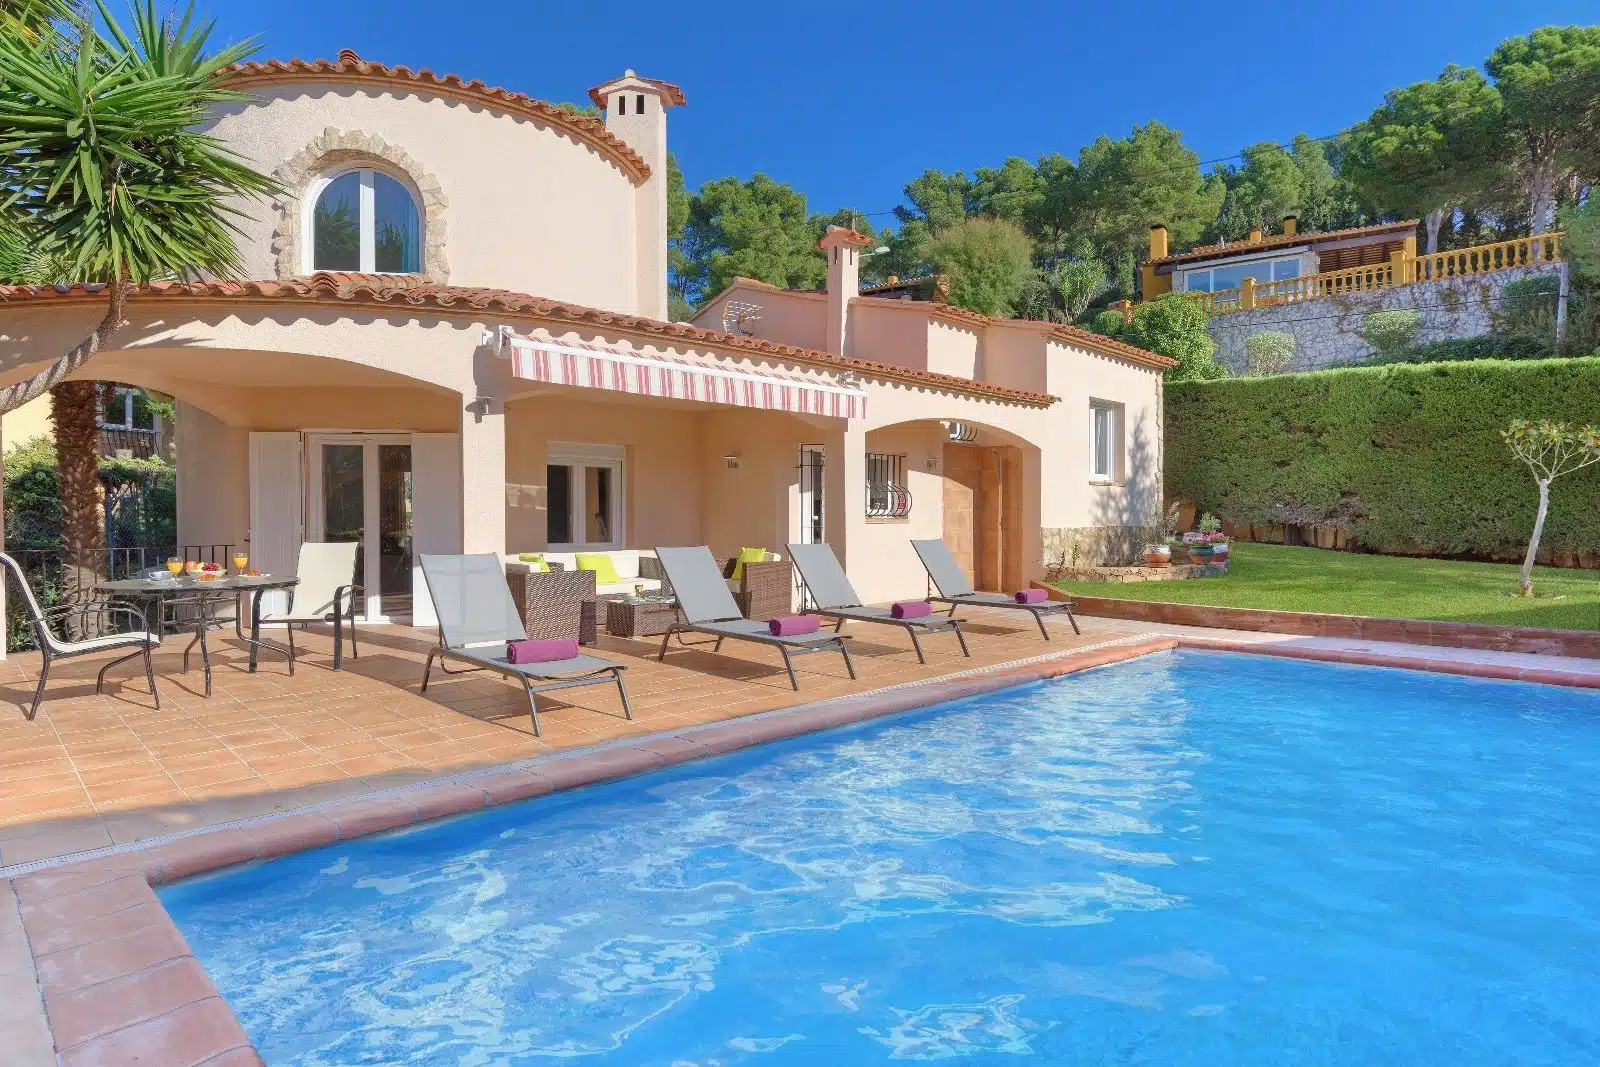 Resale Villa Te koop in Palafrugell in Spanje, gelegen aan de Costa Brava